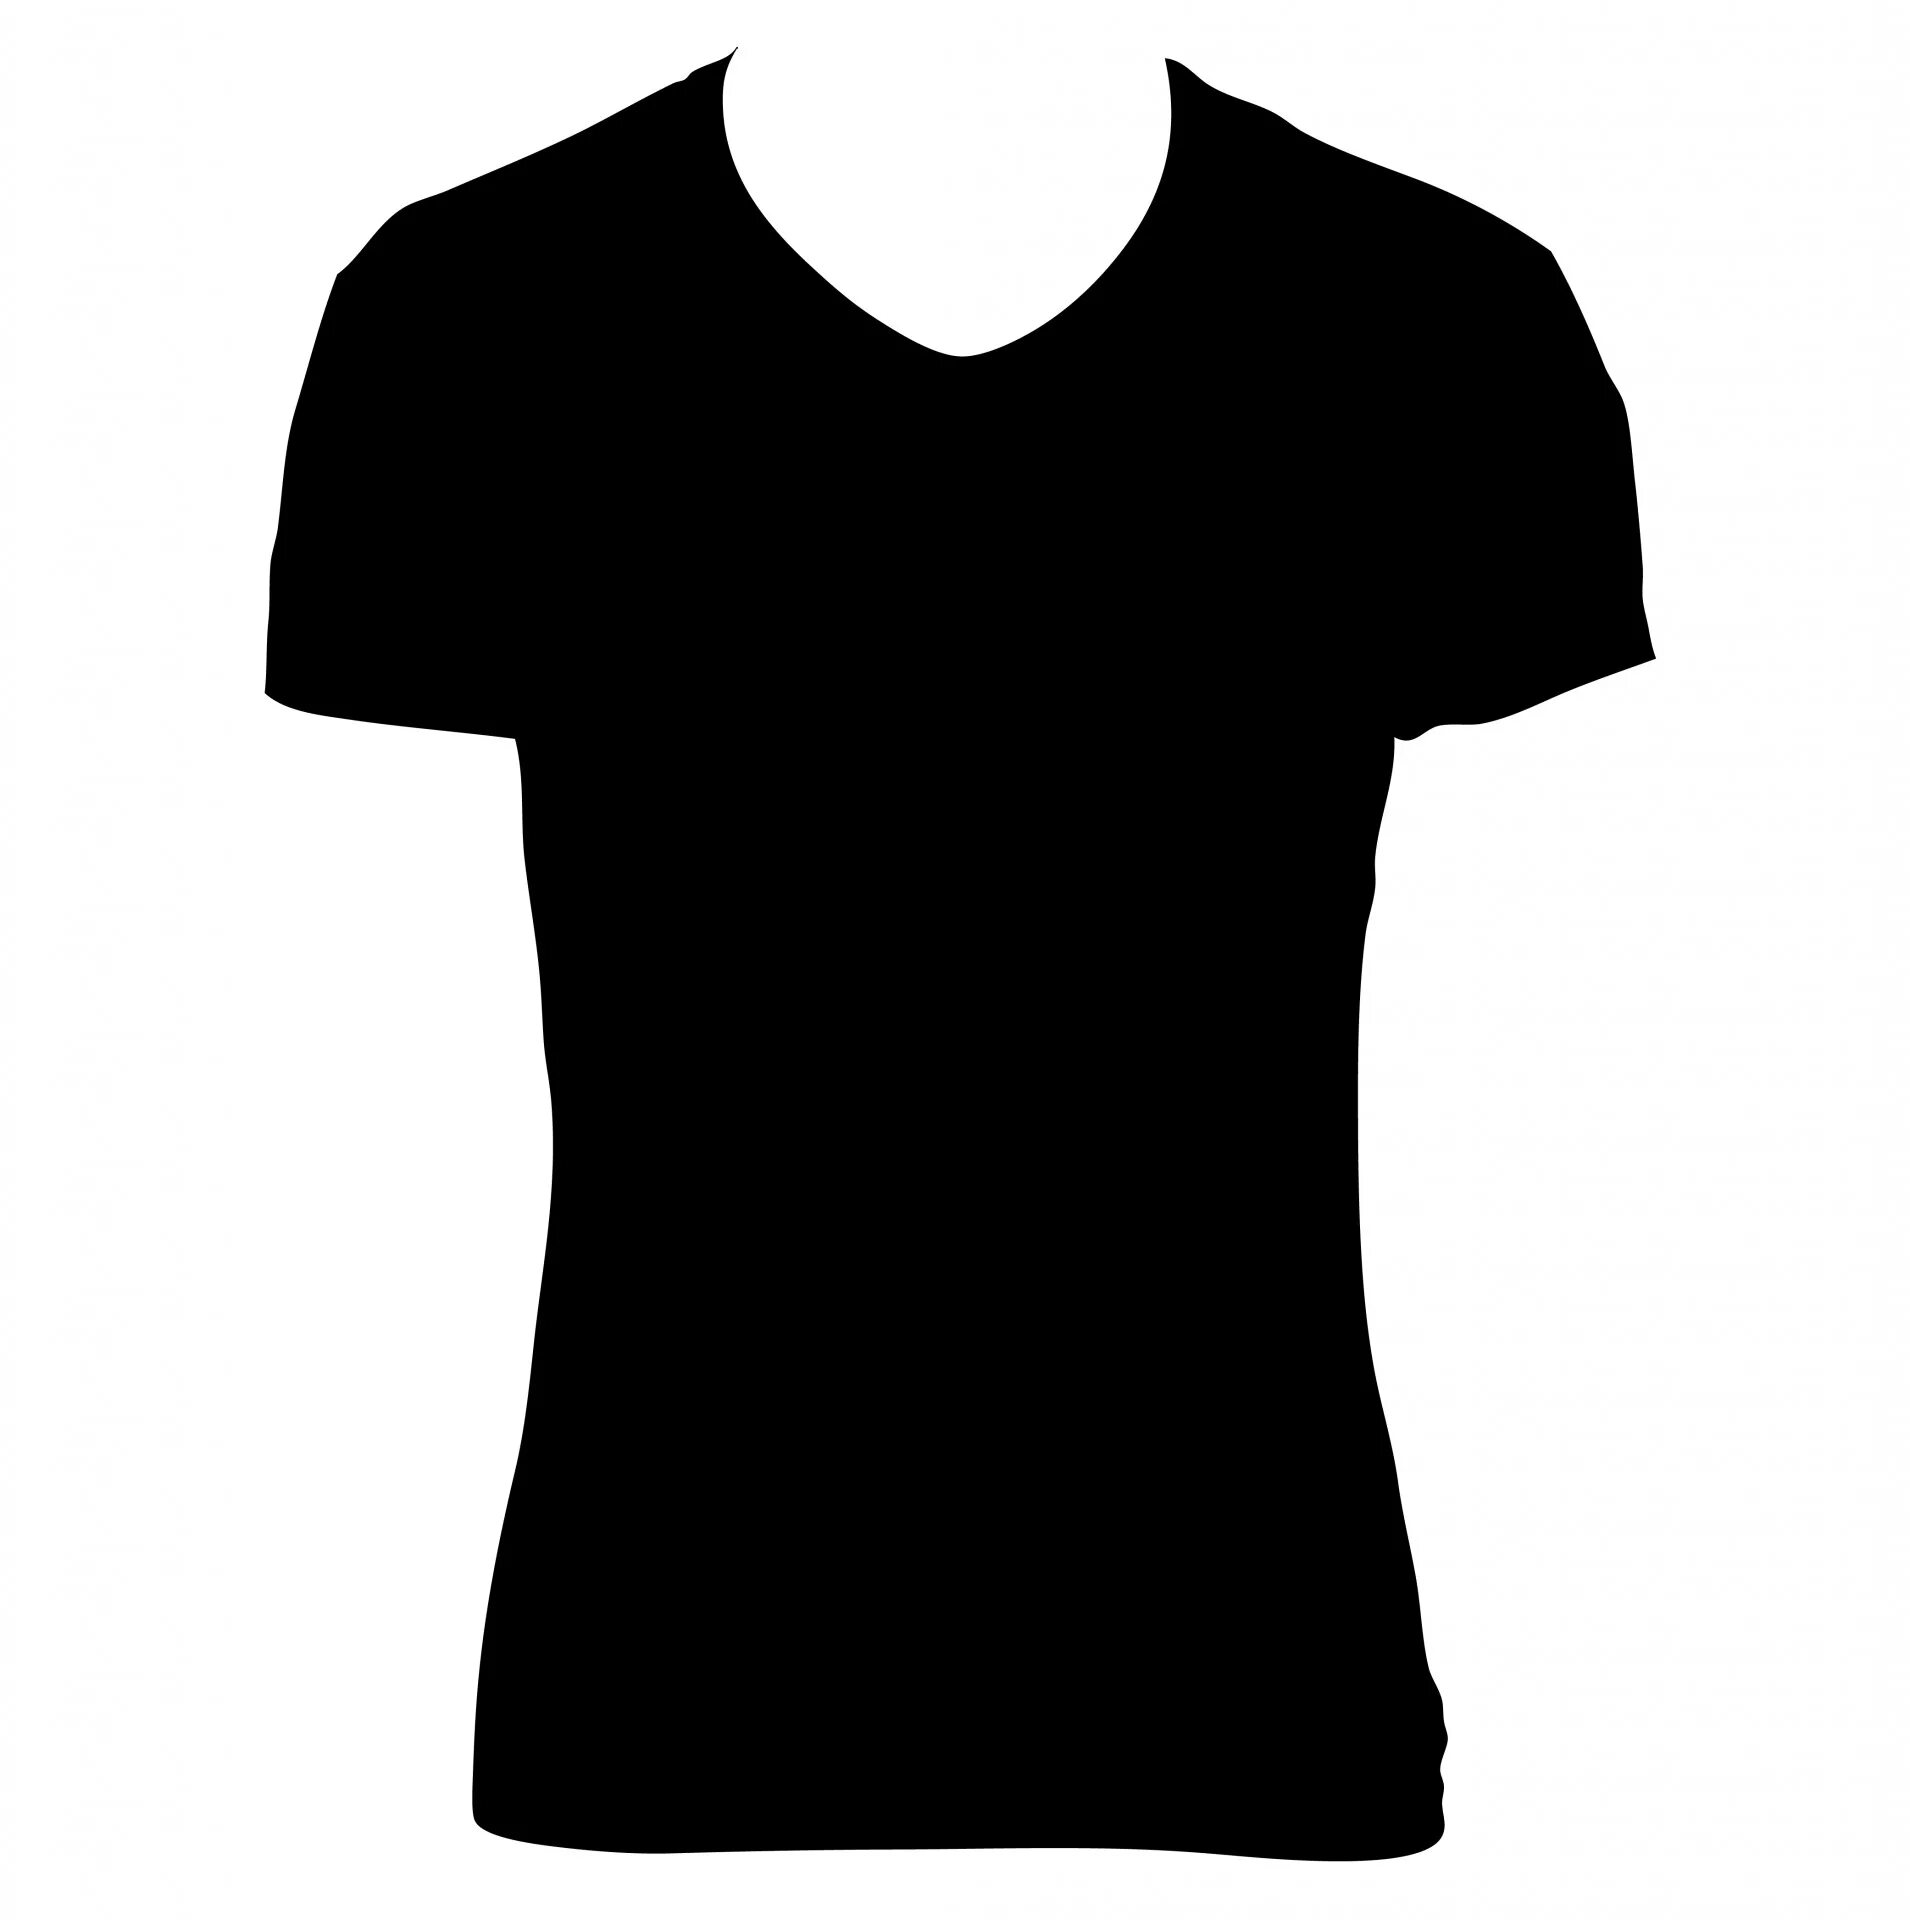 Футболка. Черная футболка. Черная футболка макет. Черная футболка на белом фоне. Аватарки майки